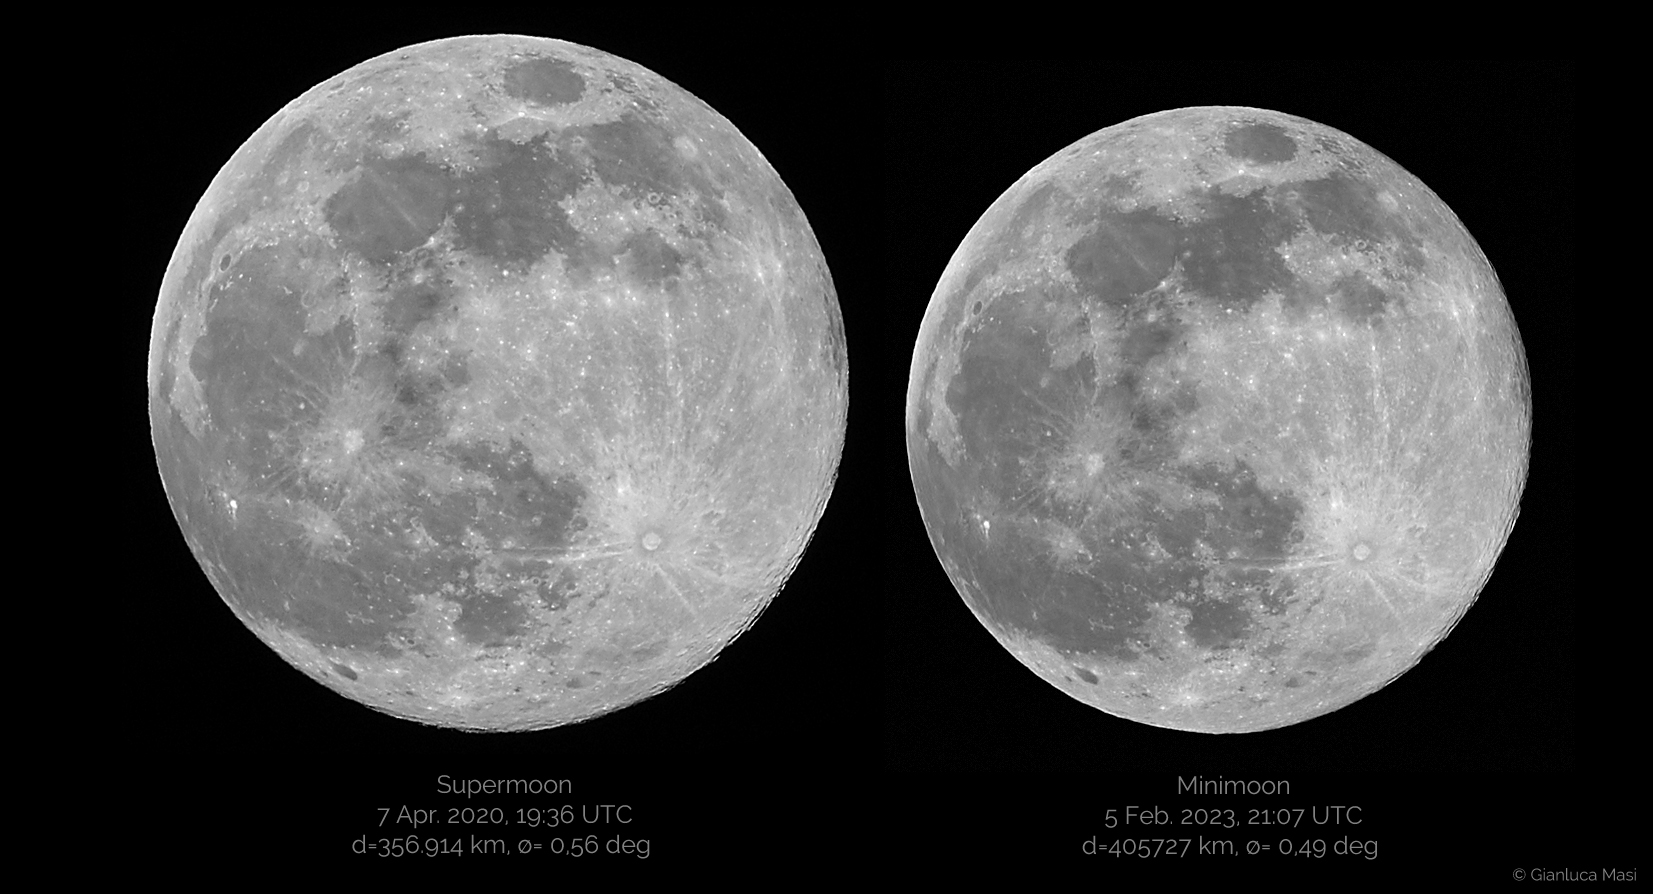 Apparent size of the “Supermoon” (left) vs “Minimoon" (right) – Dimensioni apparenti della Superluna (a sinistra) rispetto a quelle di una Miniluna Piena (a destra).